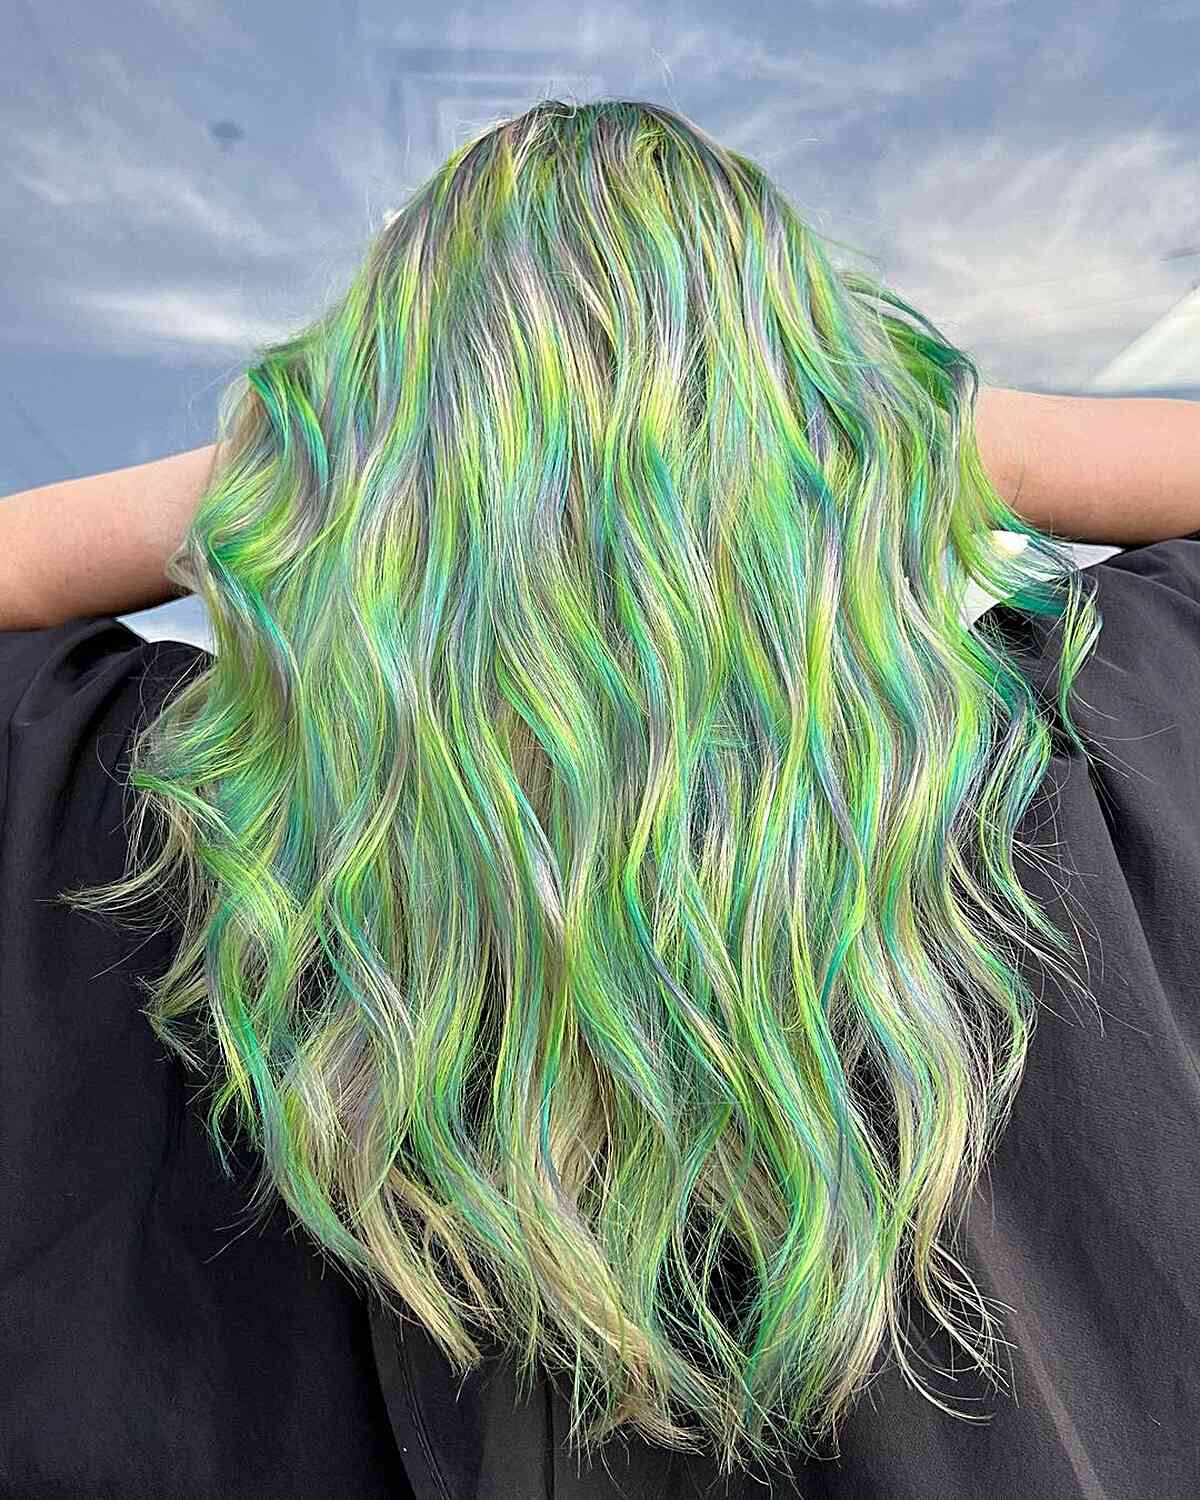 Stunning Prism Hair